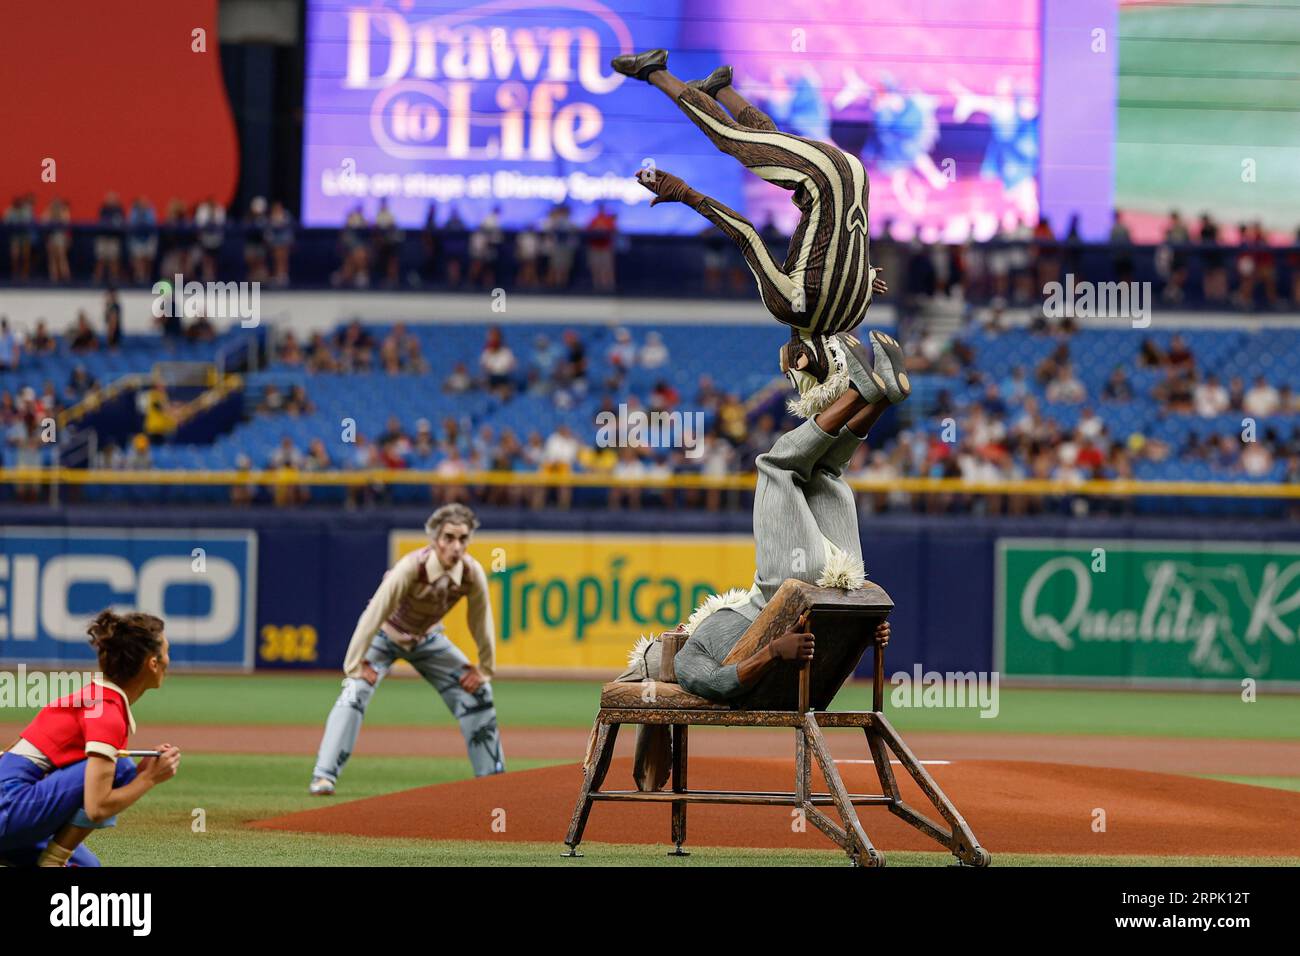 St. Petersburg, FL USA; Members of Drawn to Life, präsentiert vom Cirque du Soleil, gab vor einem MLB-Spiel zwischen den Tampons eine besondere Leistung Stockfoto